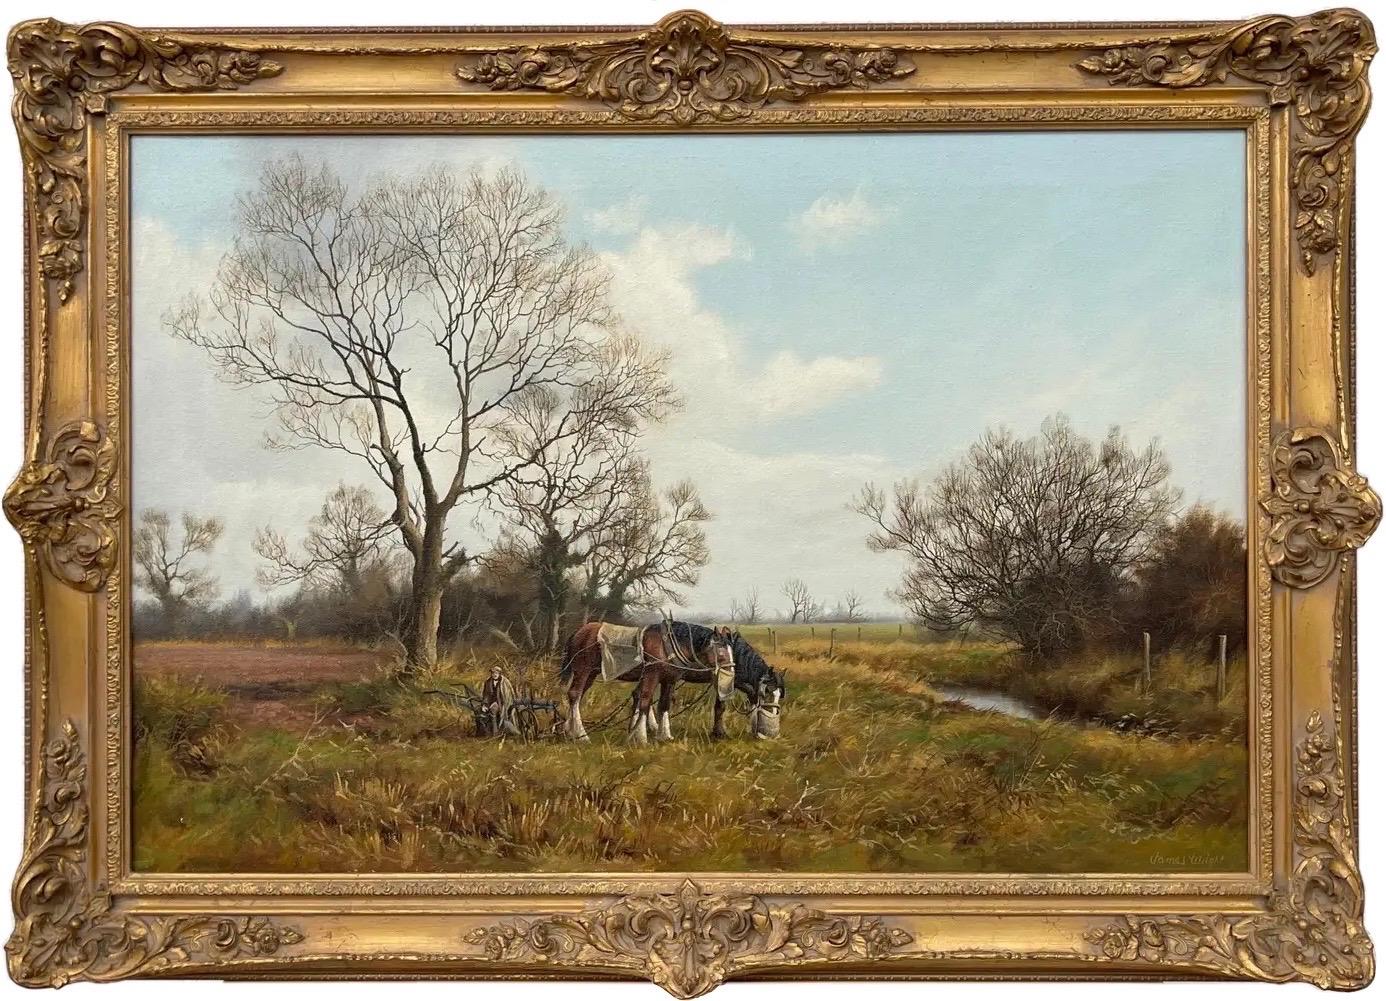 James Wright Animal Painting – Gemälde einer englischen Landschaft mit Pferden und Pflug von einem modernen britischen Künstler